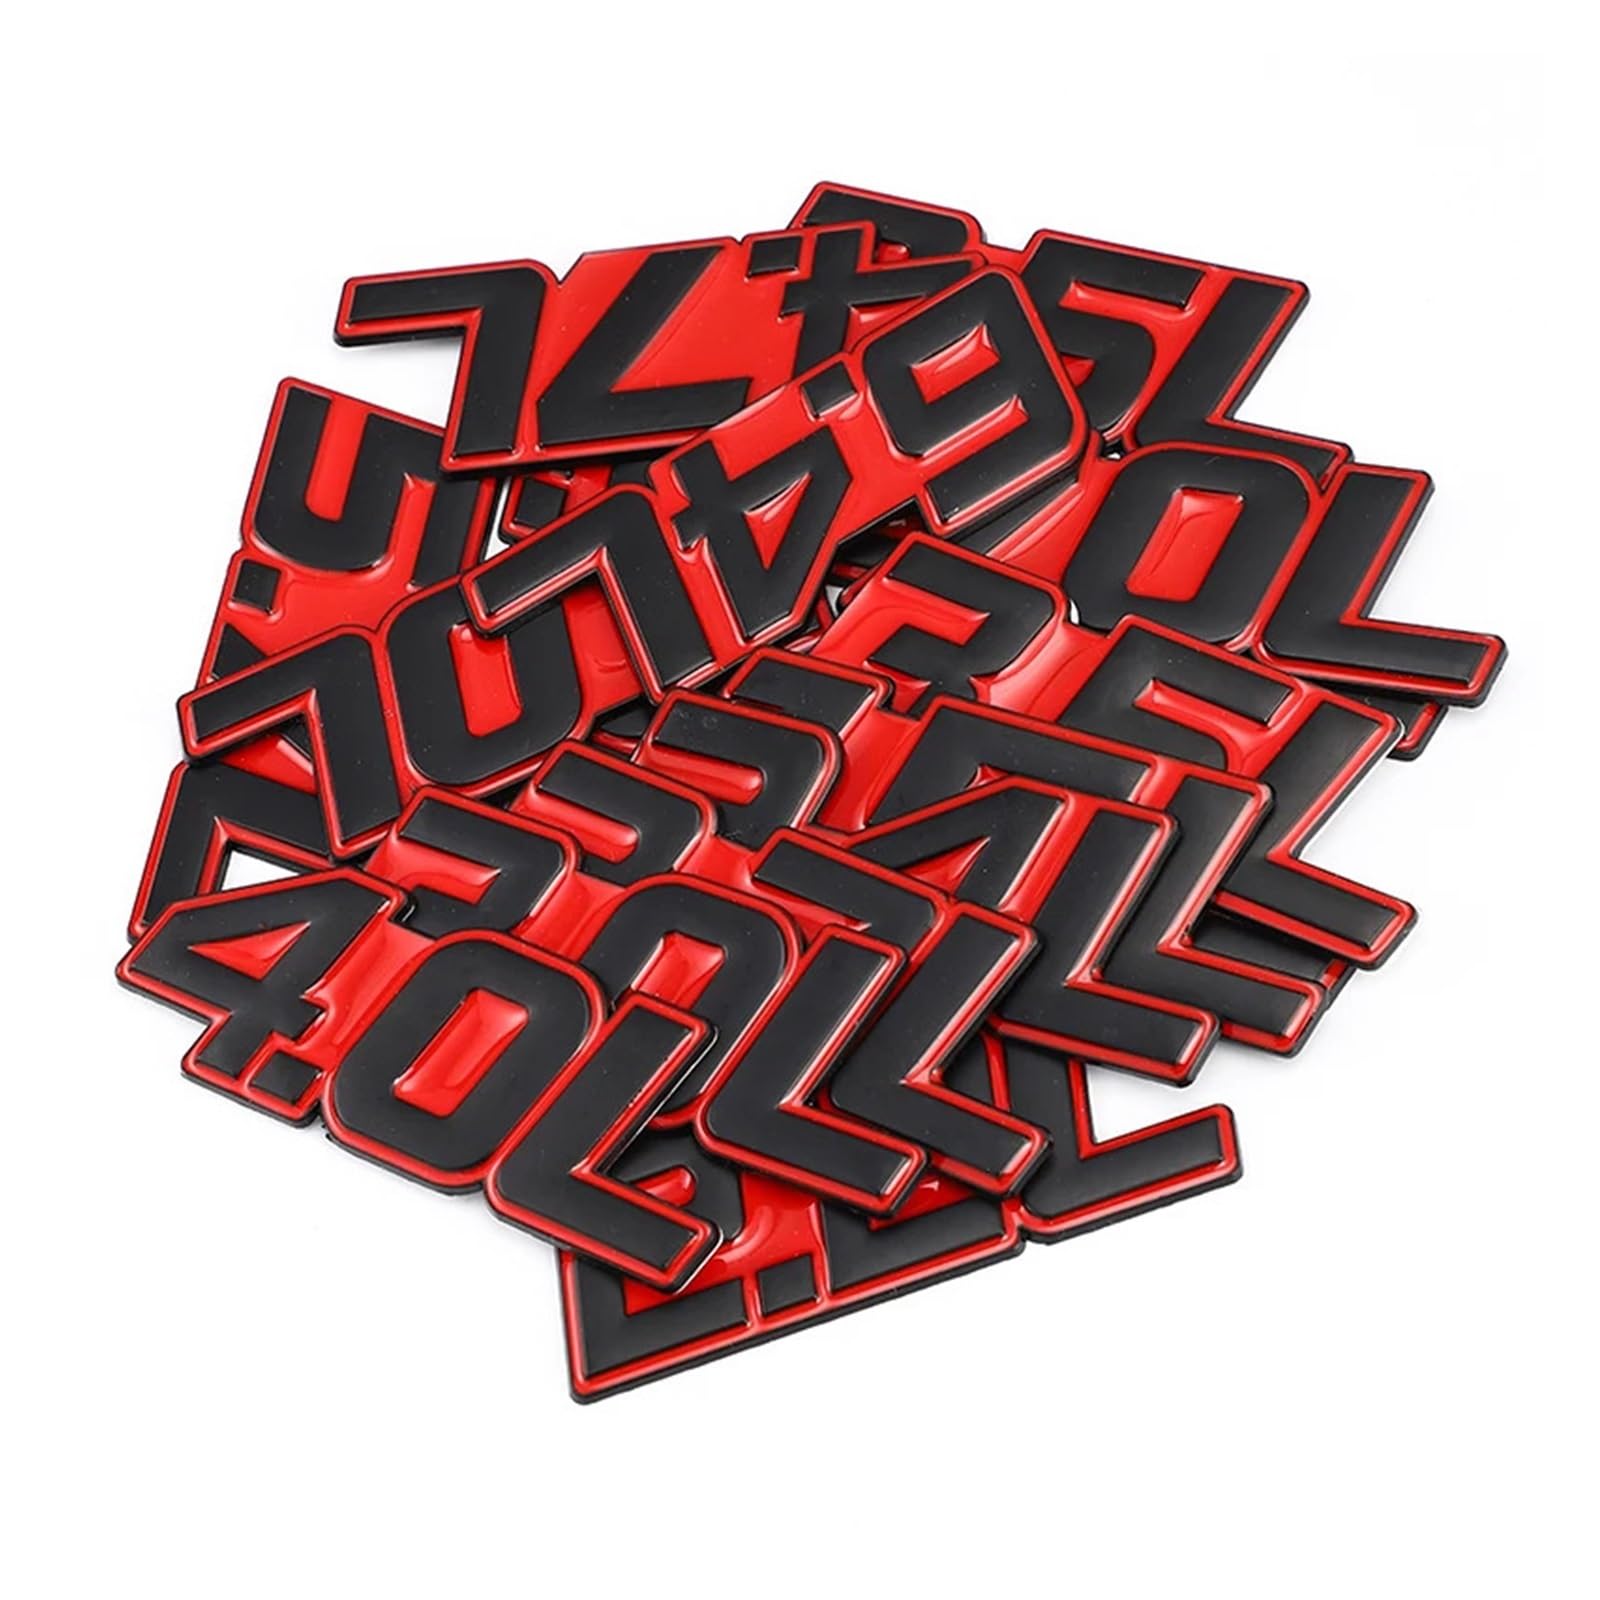 AQXYWQOL 3D Auto Aufkleber Metall L Logo Auto Styling Metall Abzeichen Emblem Schwanz Aufkleber Motorrad Farbe ist konstant, verblasst nicht und beschädigt(Red Sticker,6.4L) von AQXYWQOL